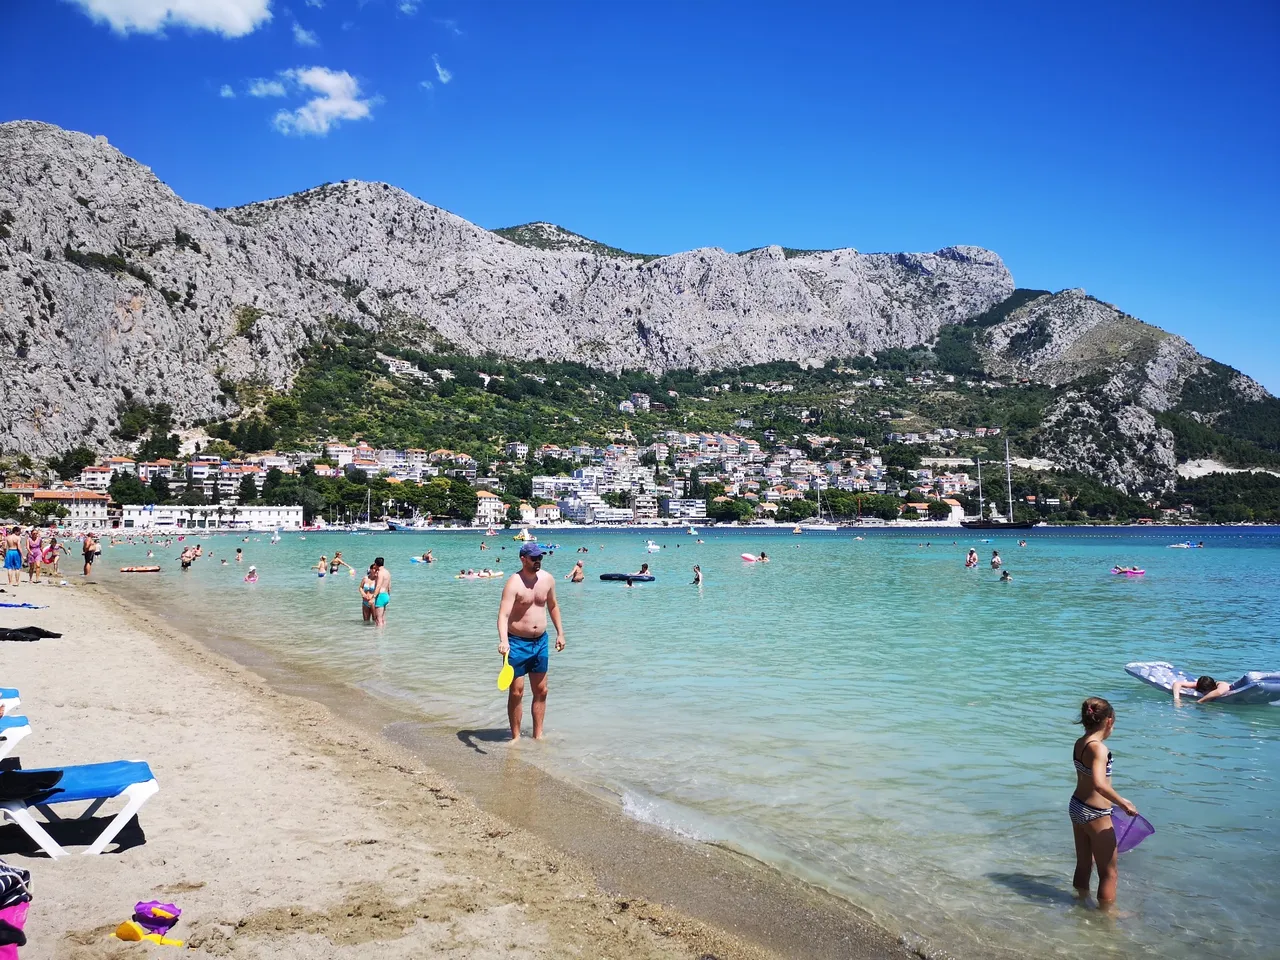 Super atrakcją Omiša jest oczywiście plaża. I o ile wiadomo, że każdy chce w Chorwacji trochę poplażować, tak Omiš zasługuje na specjalną uwagę że względu na piaszczystą plażę i bezproblemowe dno (można bez butów do wody), a jednocześnie zachowuje ten wspaniały kolor chorwackiej wody.